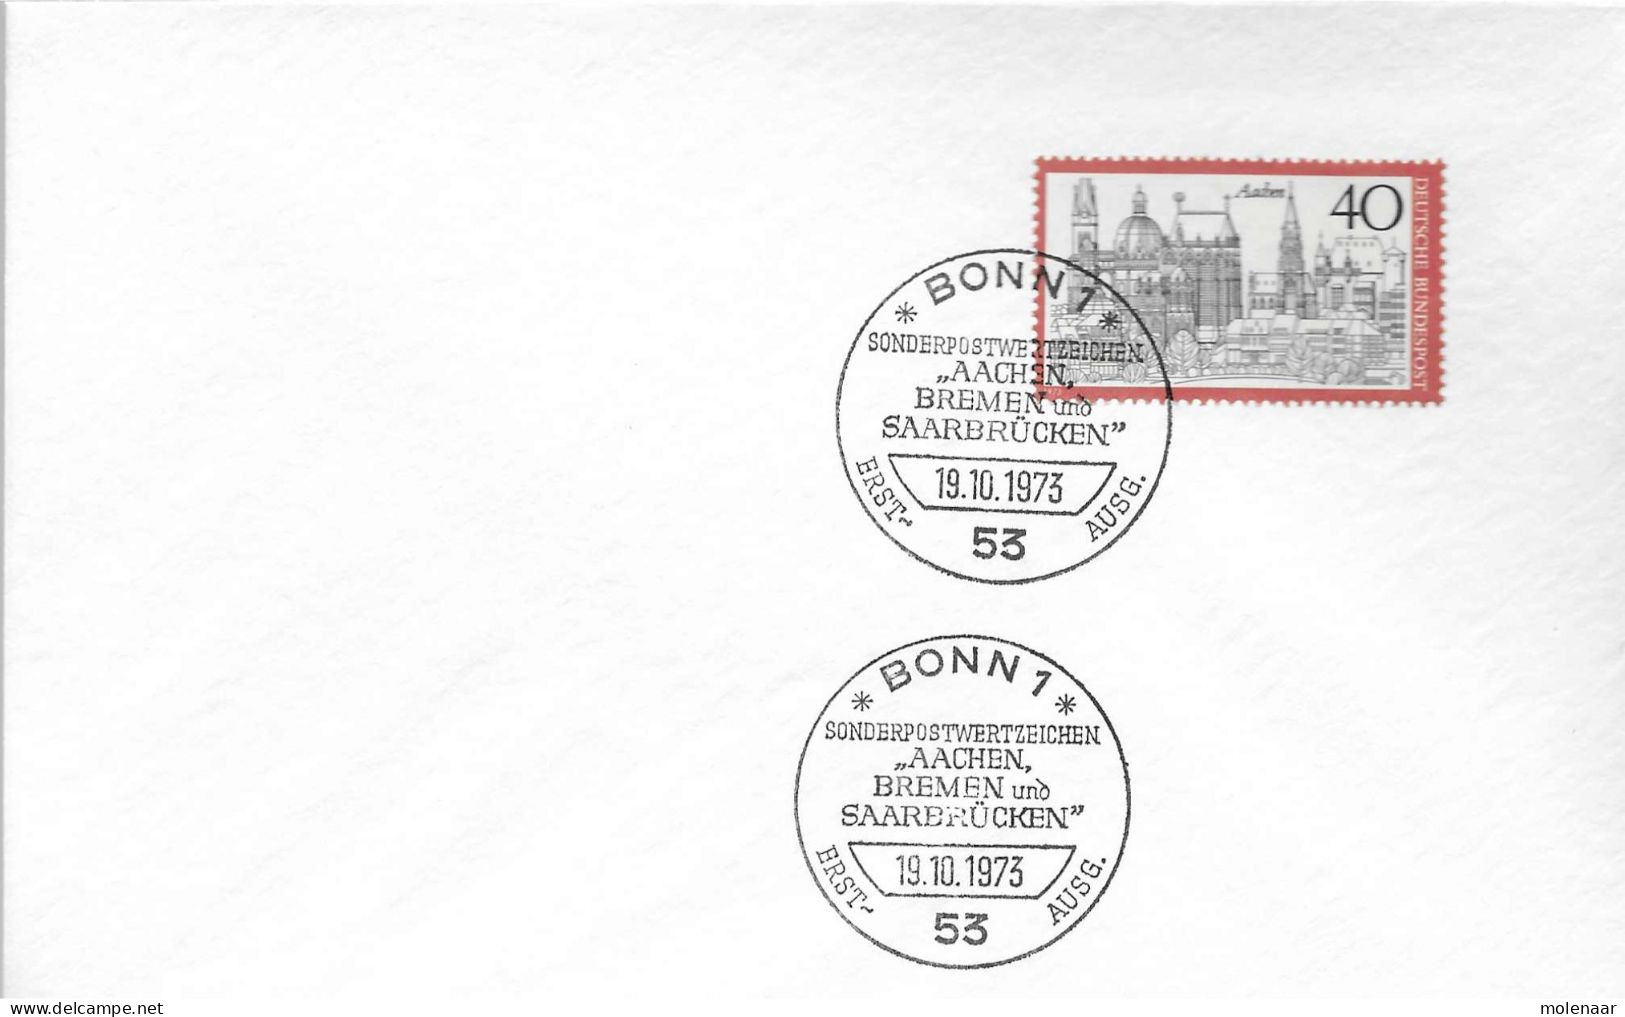 Postzegels > Europa > Duitsland > West-Duitsland > 1e Dag FDC (brieven) > 1971-1980 Met No. 788 (17218) - 1971-1980